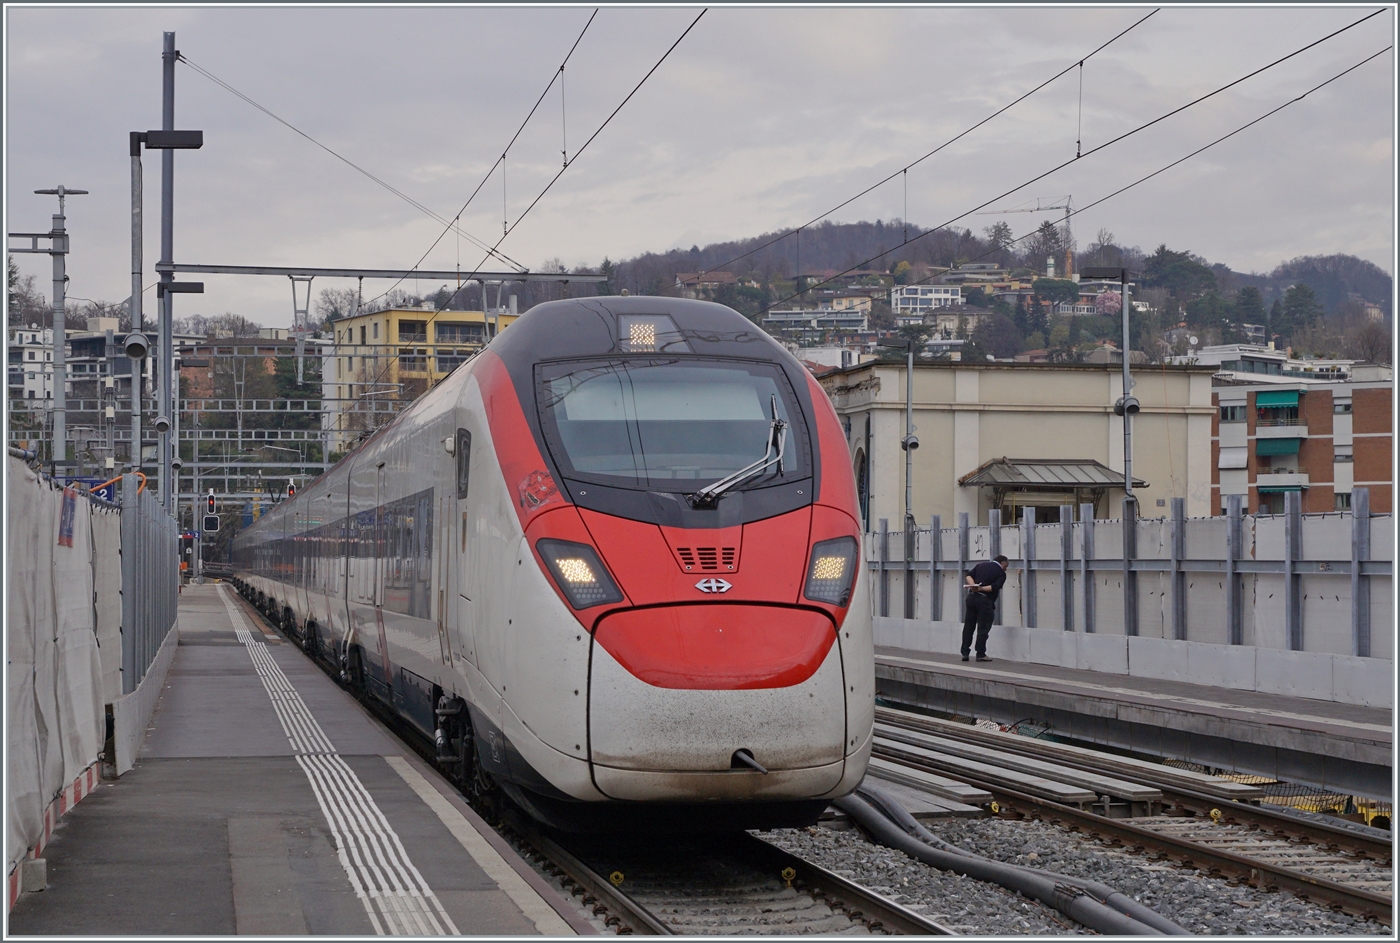 Der SBB Giruno RABe 501 007 URI  ist als EC 307 von Zürich nach Bologna unterwegs und erreicht Lugano. 

13. März 2023